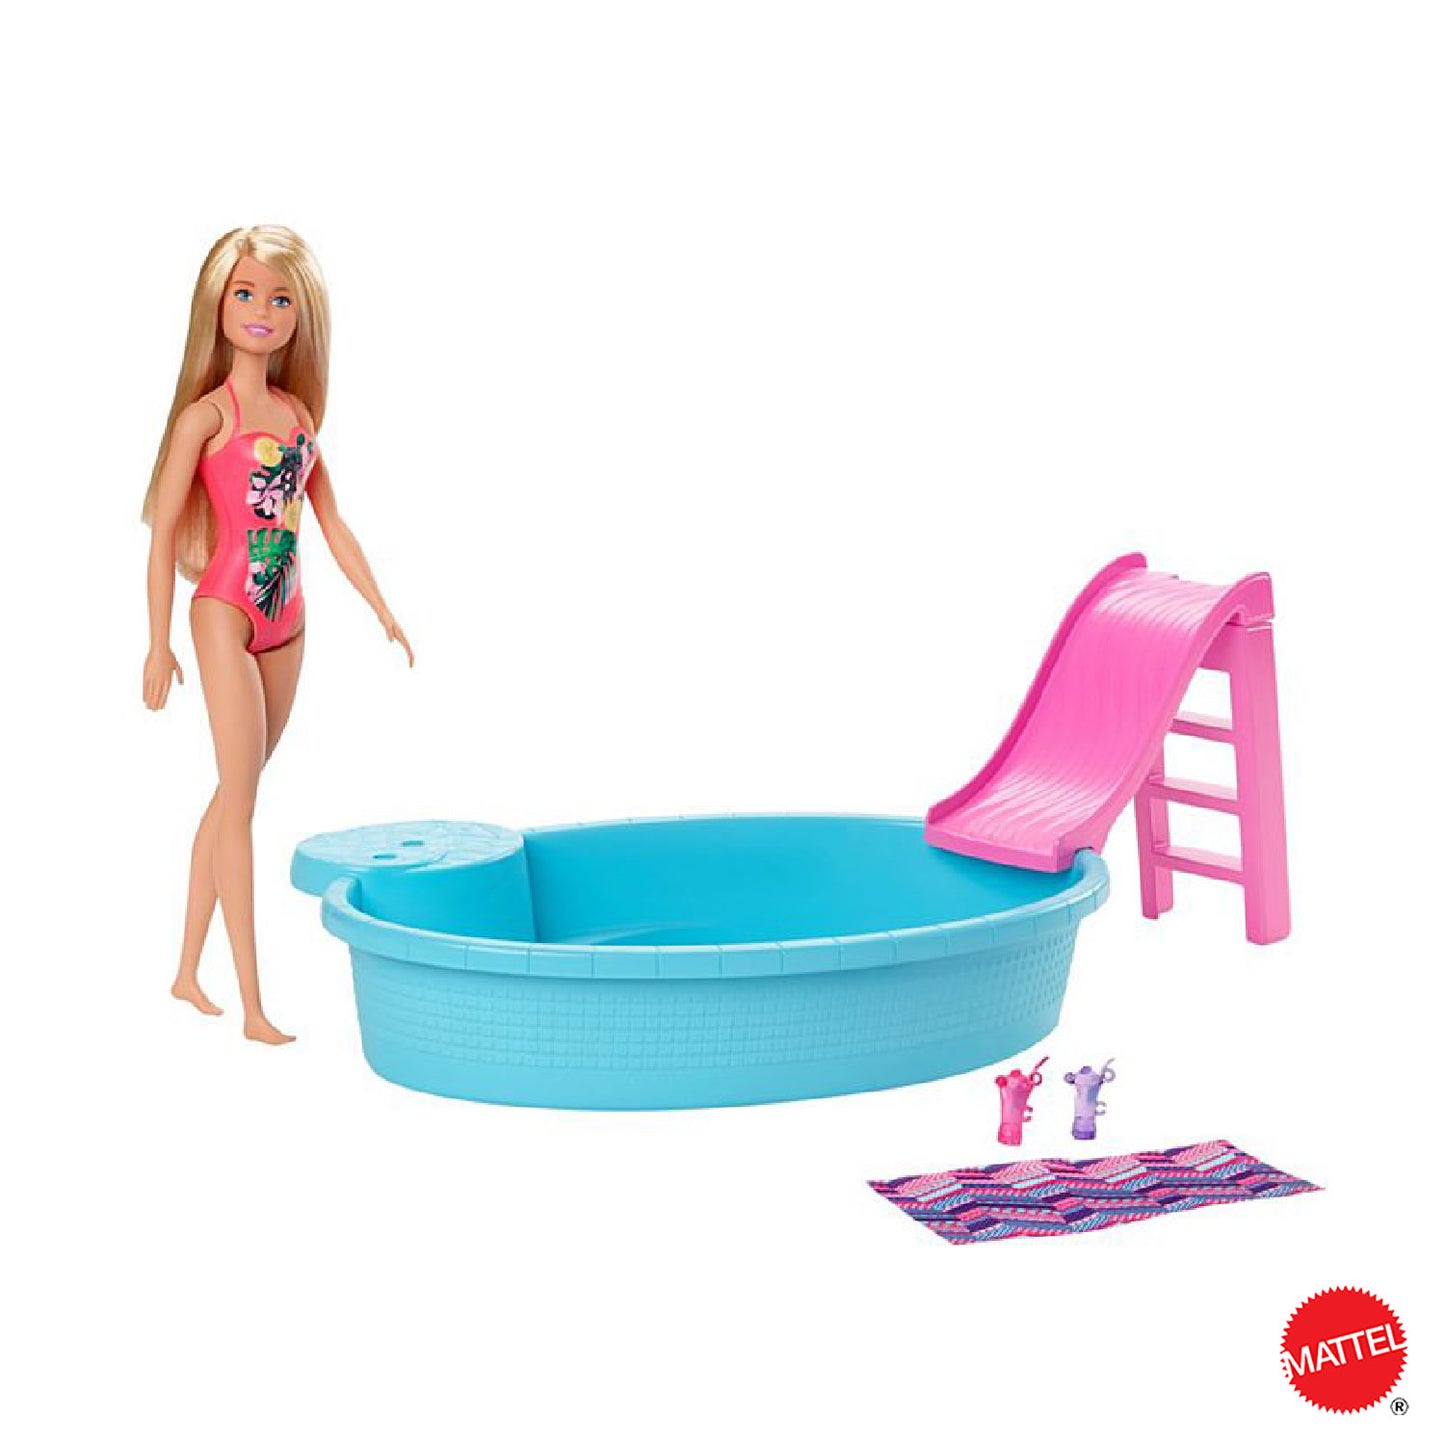 Mattel - Barbie Piscina Wdoll Blonde GHL91